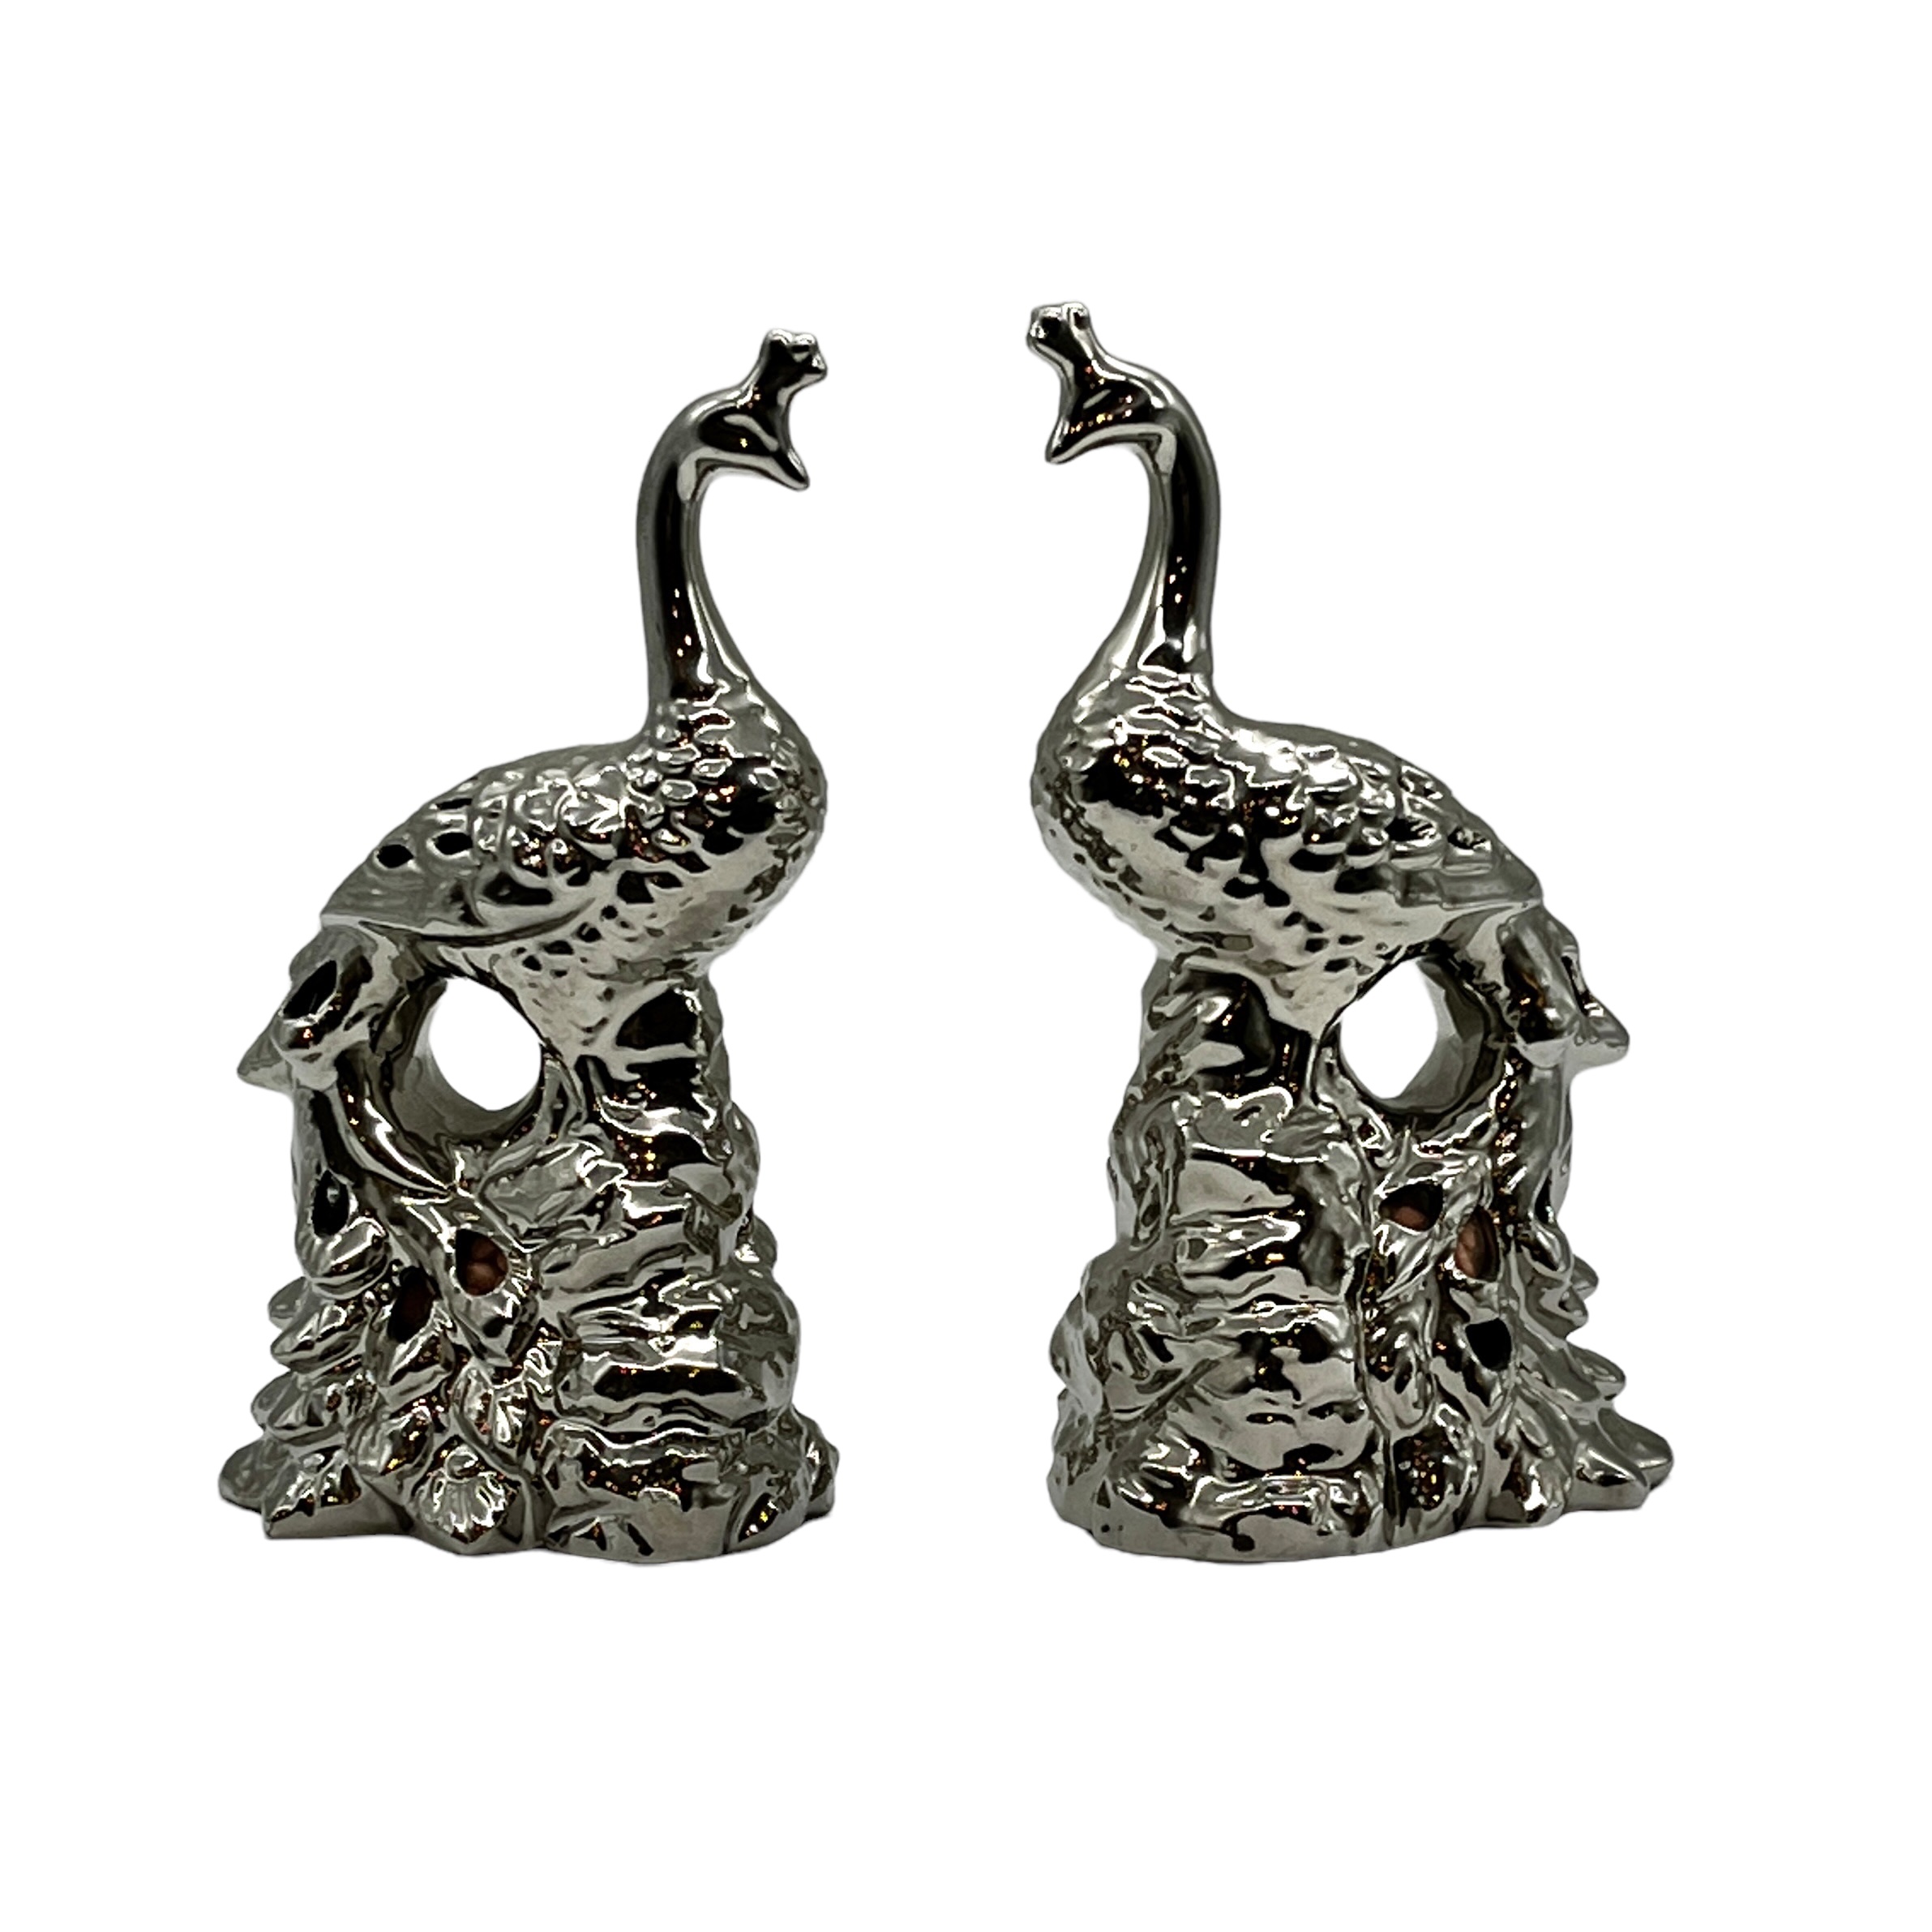 Silver Metal Peacock Figurines, Pair~P77659271